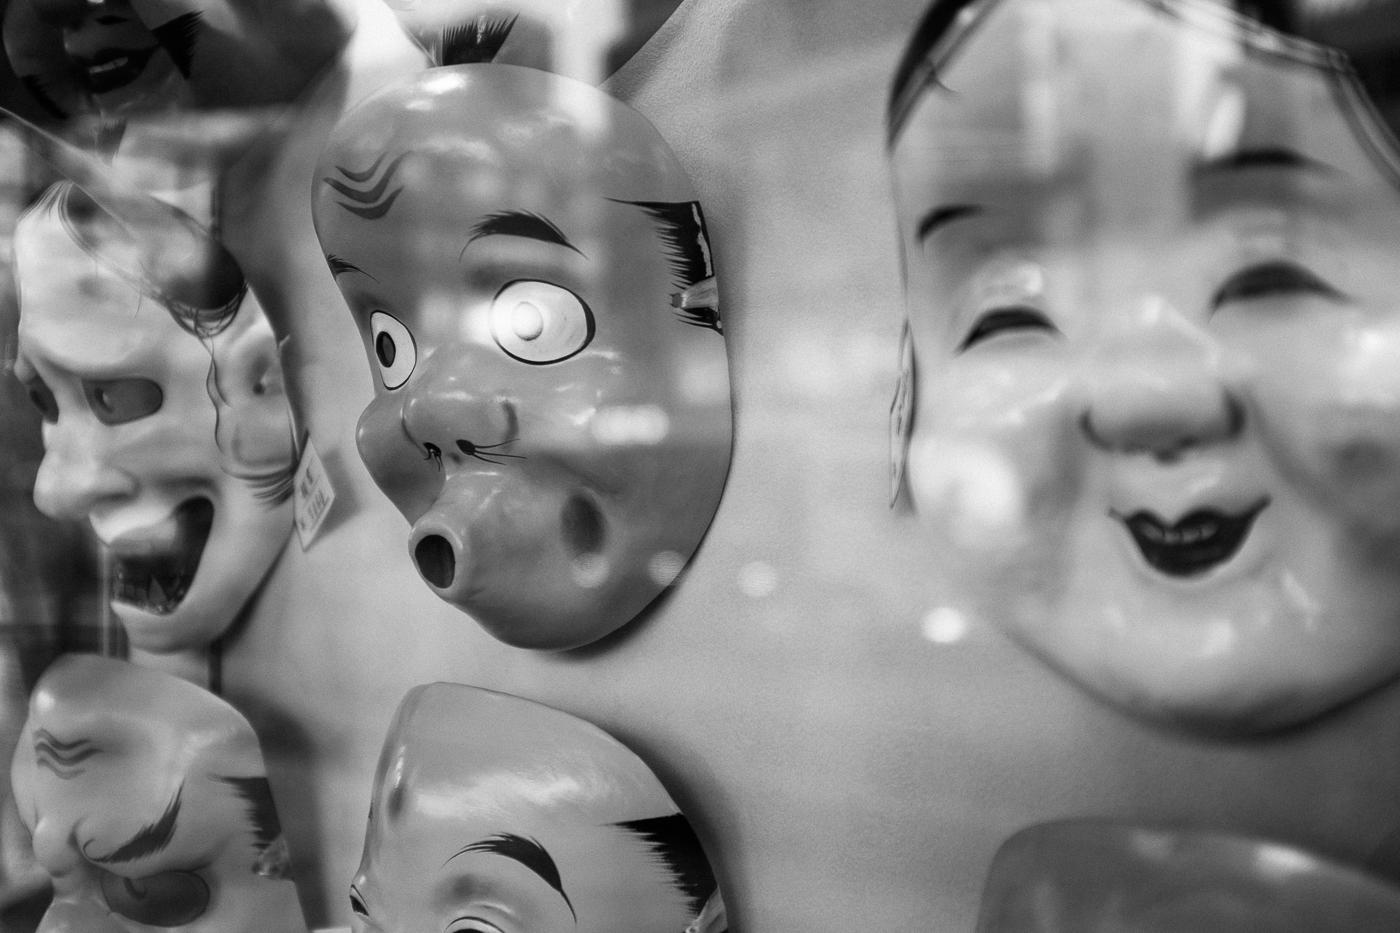 Des masques de théatre no dans une devanture de magasin à Tokyo